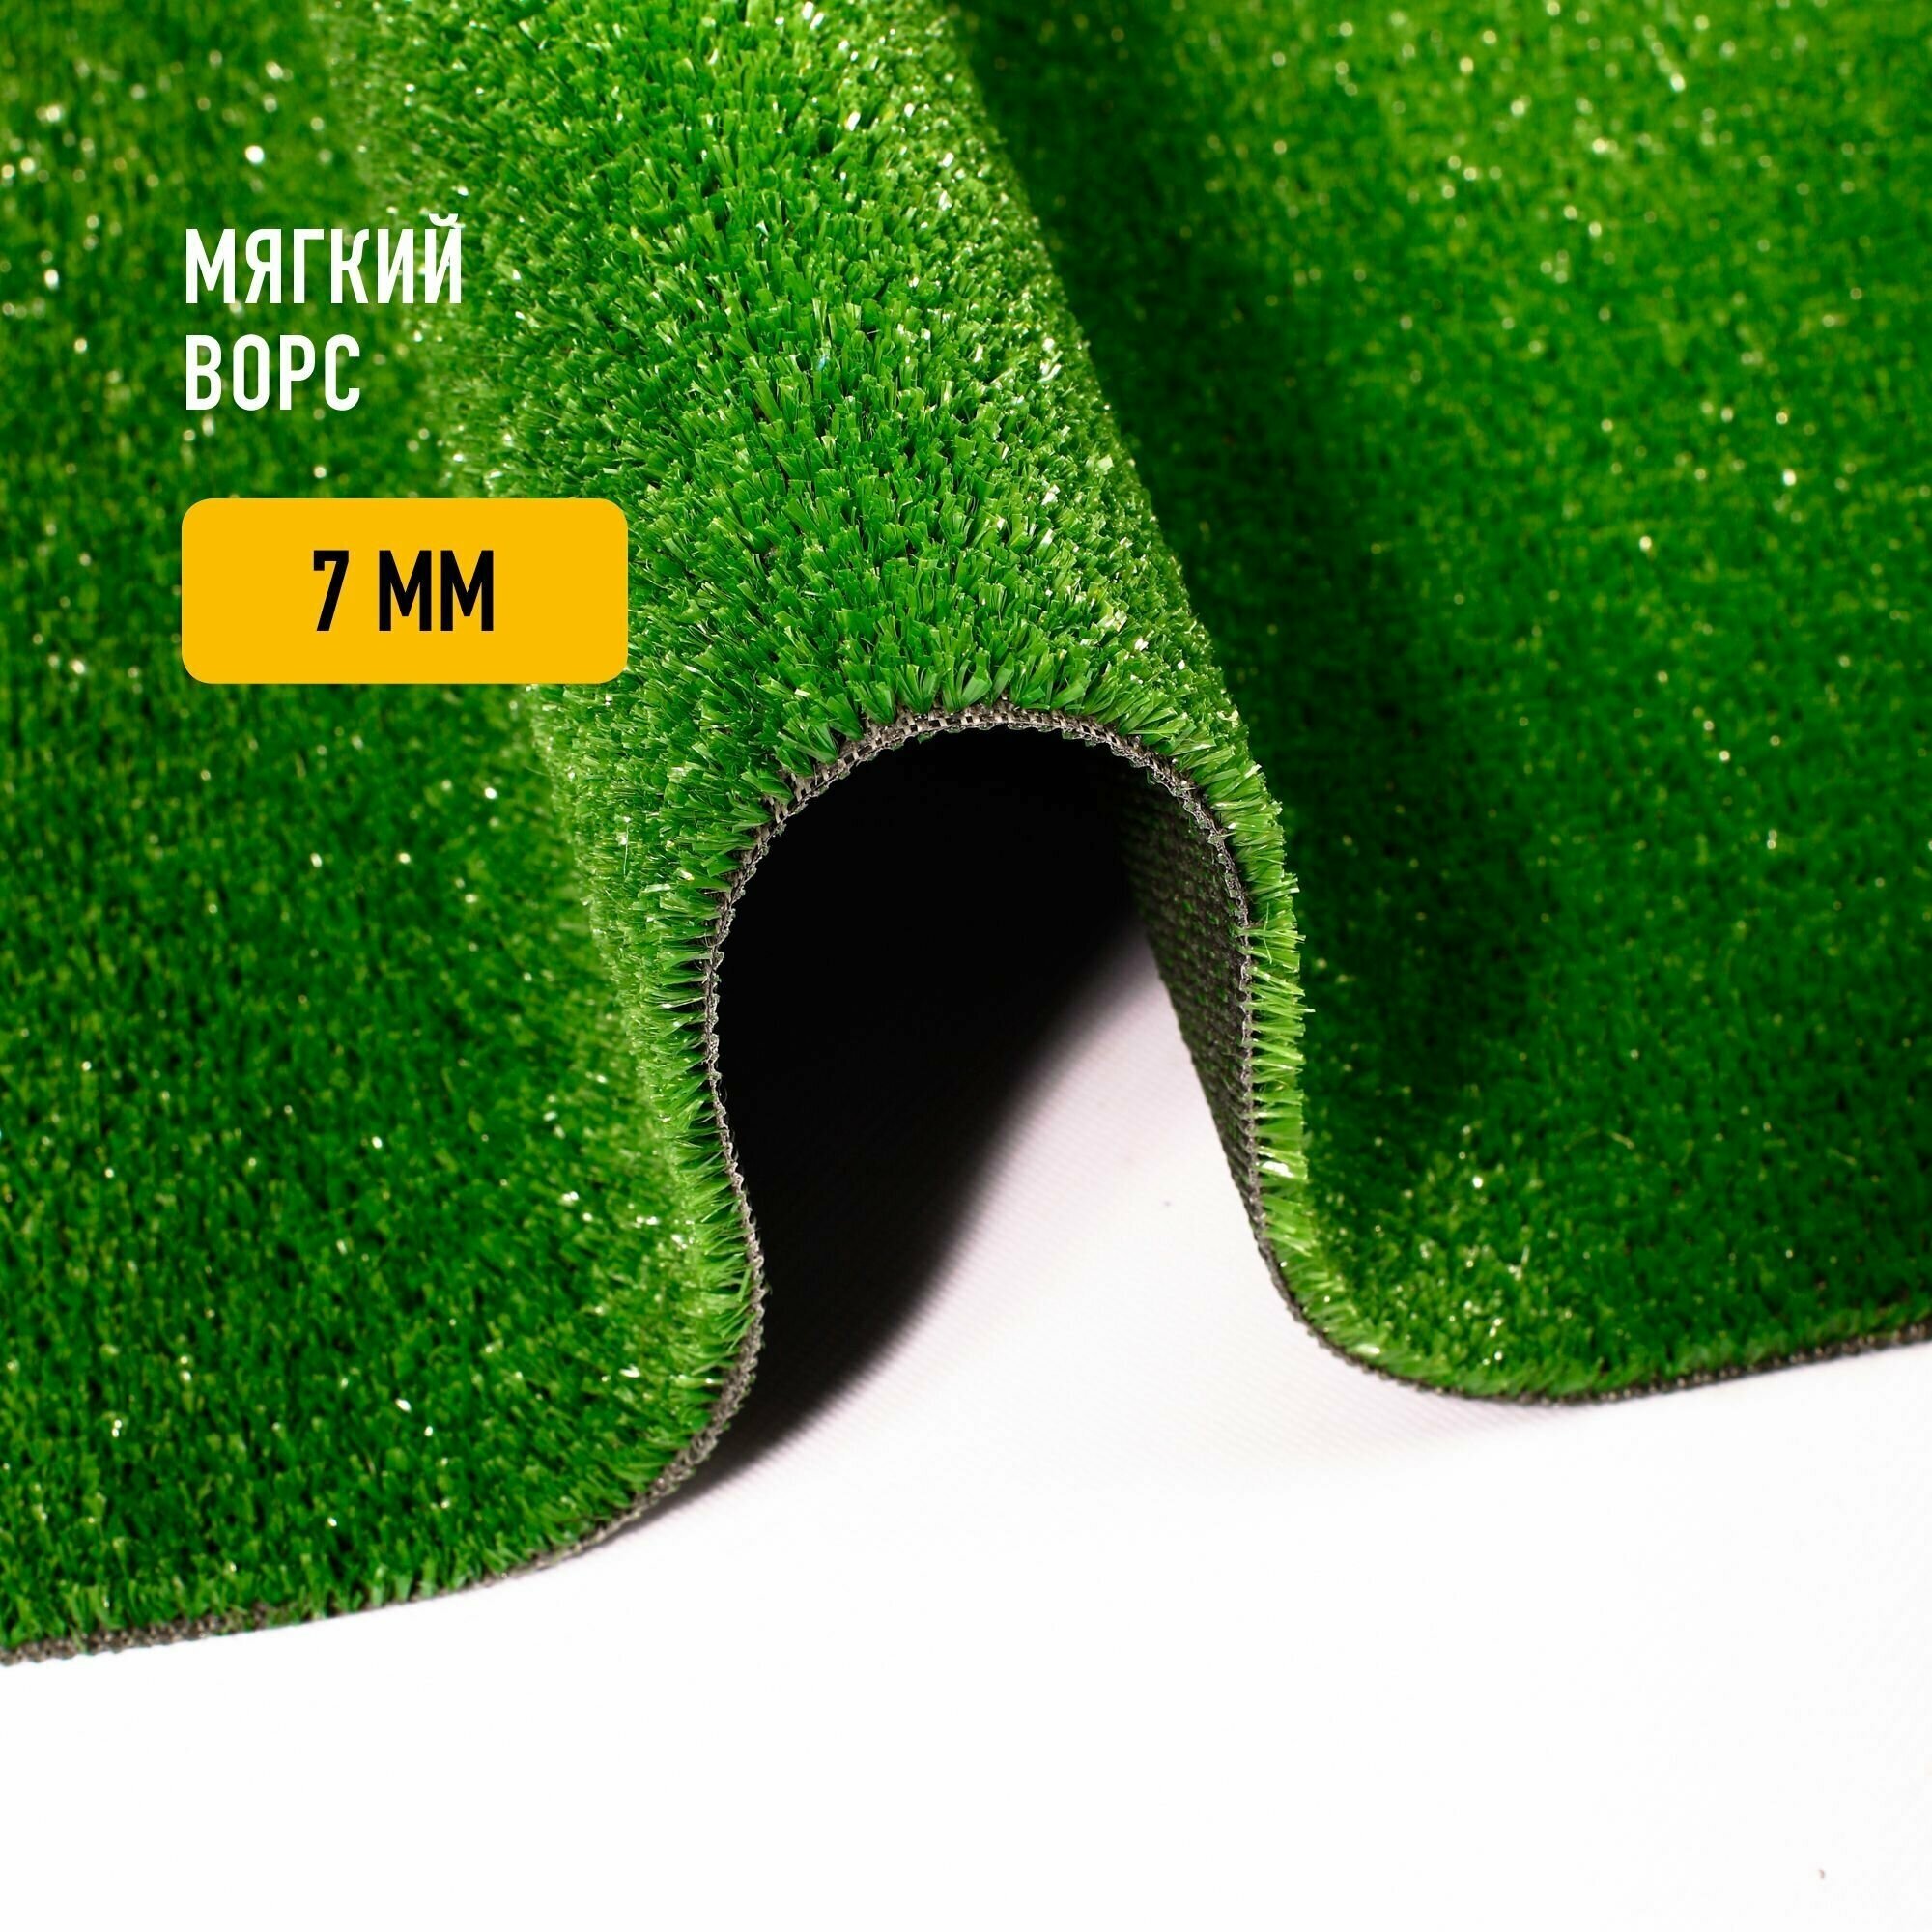 Искусственный газон 2х1 м в рулоне Premium Grass Nature 7 Green, ворс 7 мм. Искусственная трава. 4786393-2х1